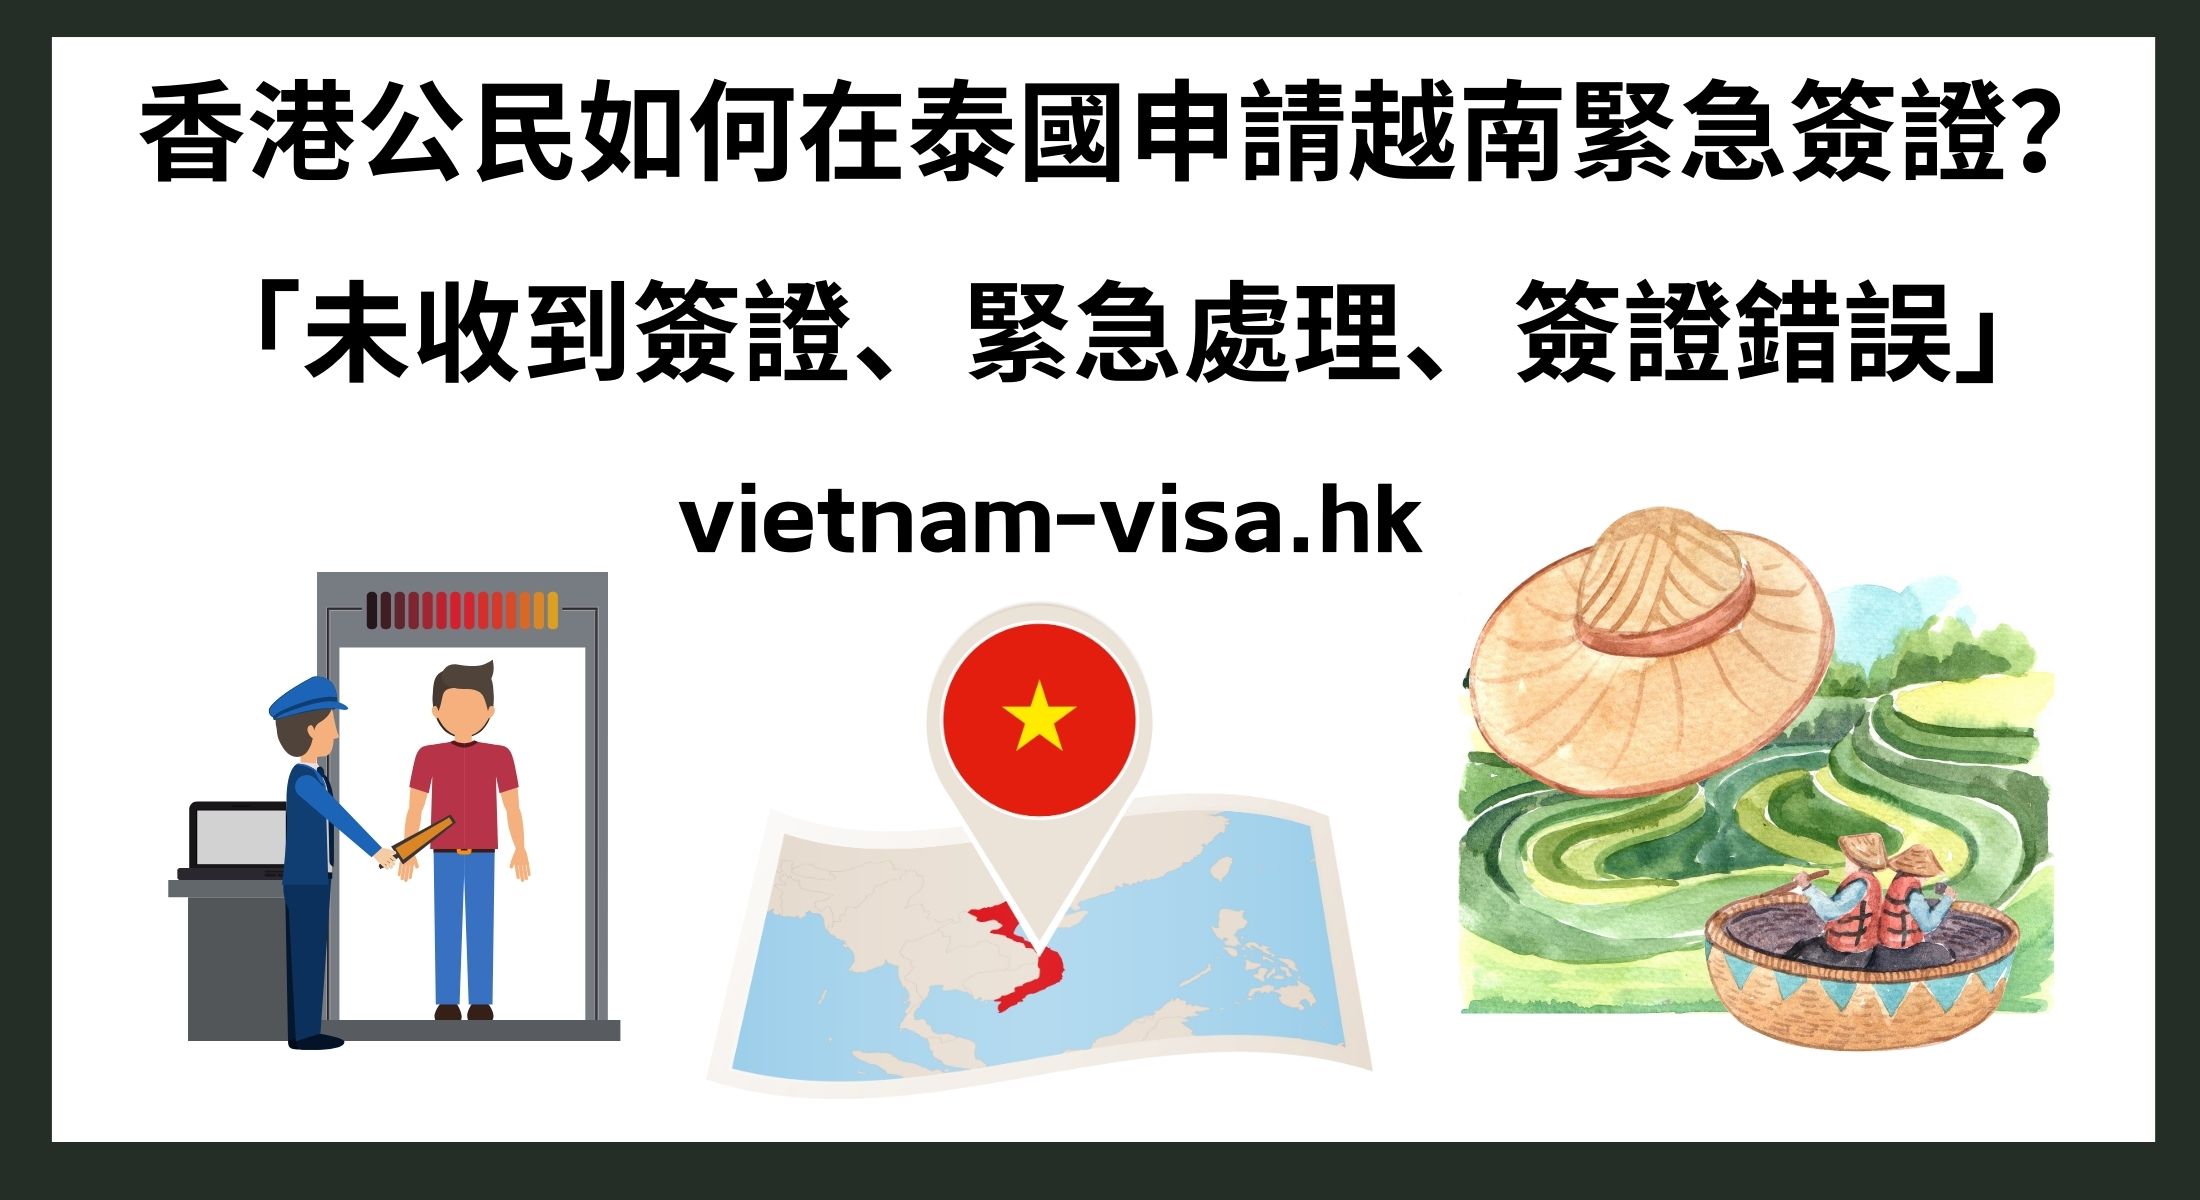 香港公民如何在泰國申請越南緊急簽證？ 「未收到簽證、緊急處理、簽證錯誤」